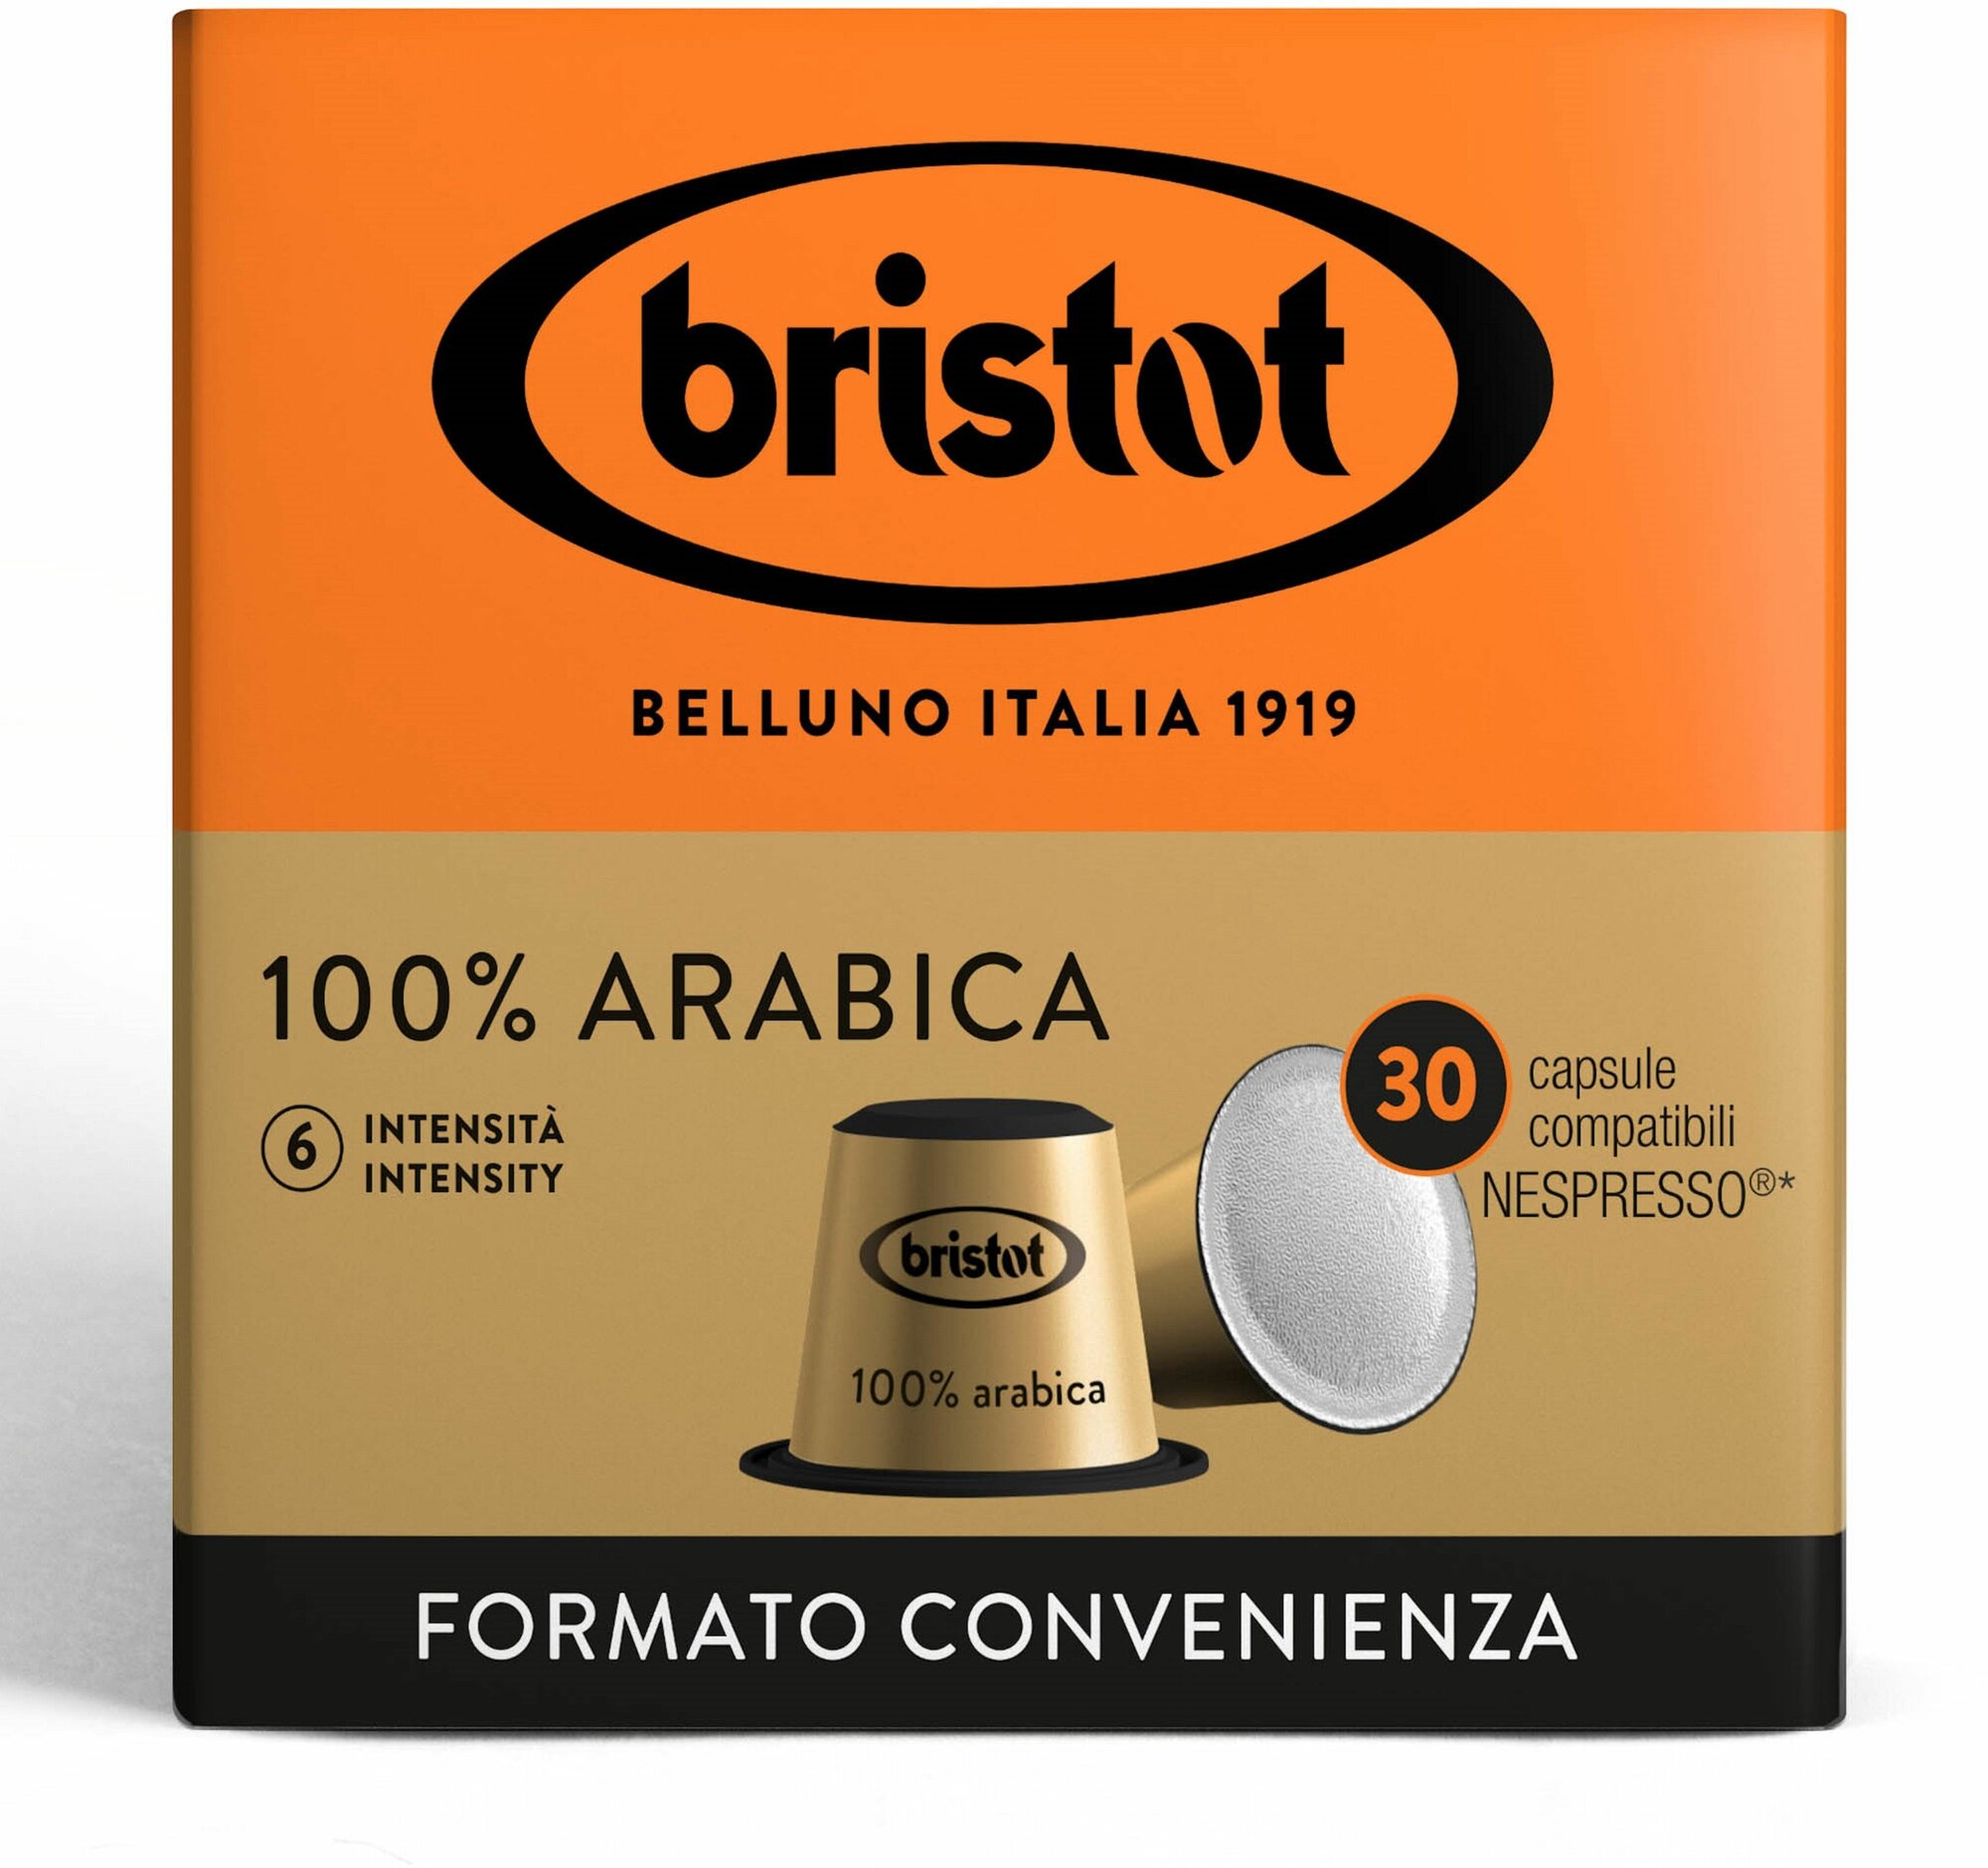 Кофе Bristot 100% Arabica 30шт. в капсулах Nespresso